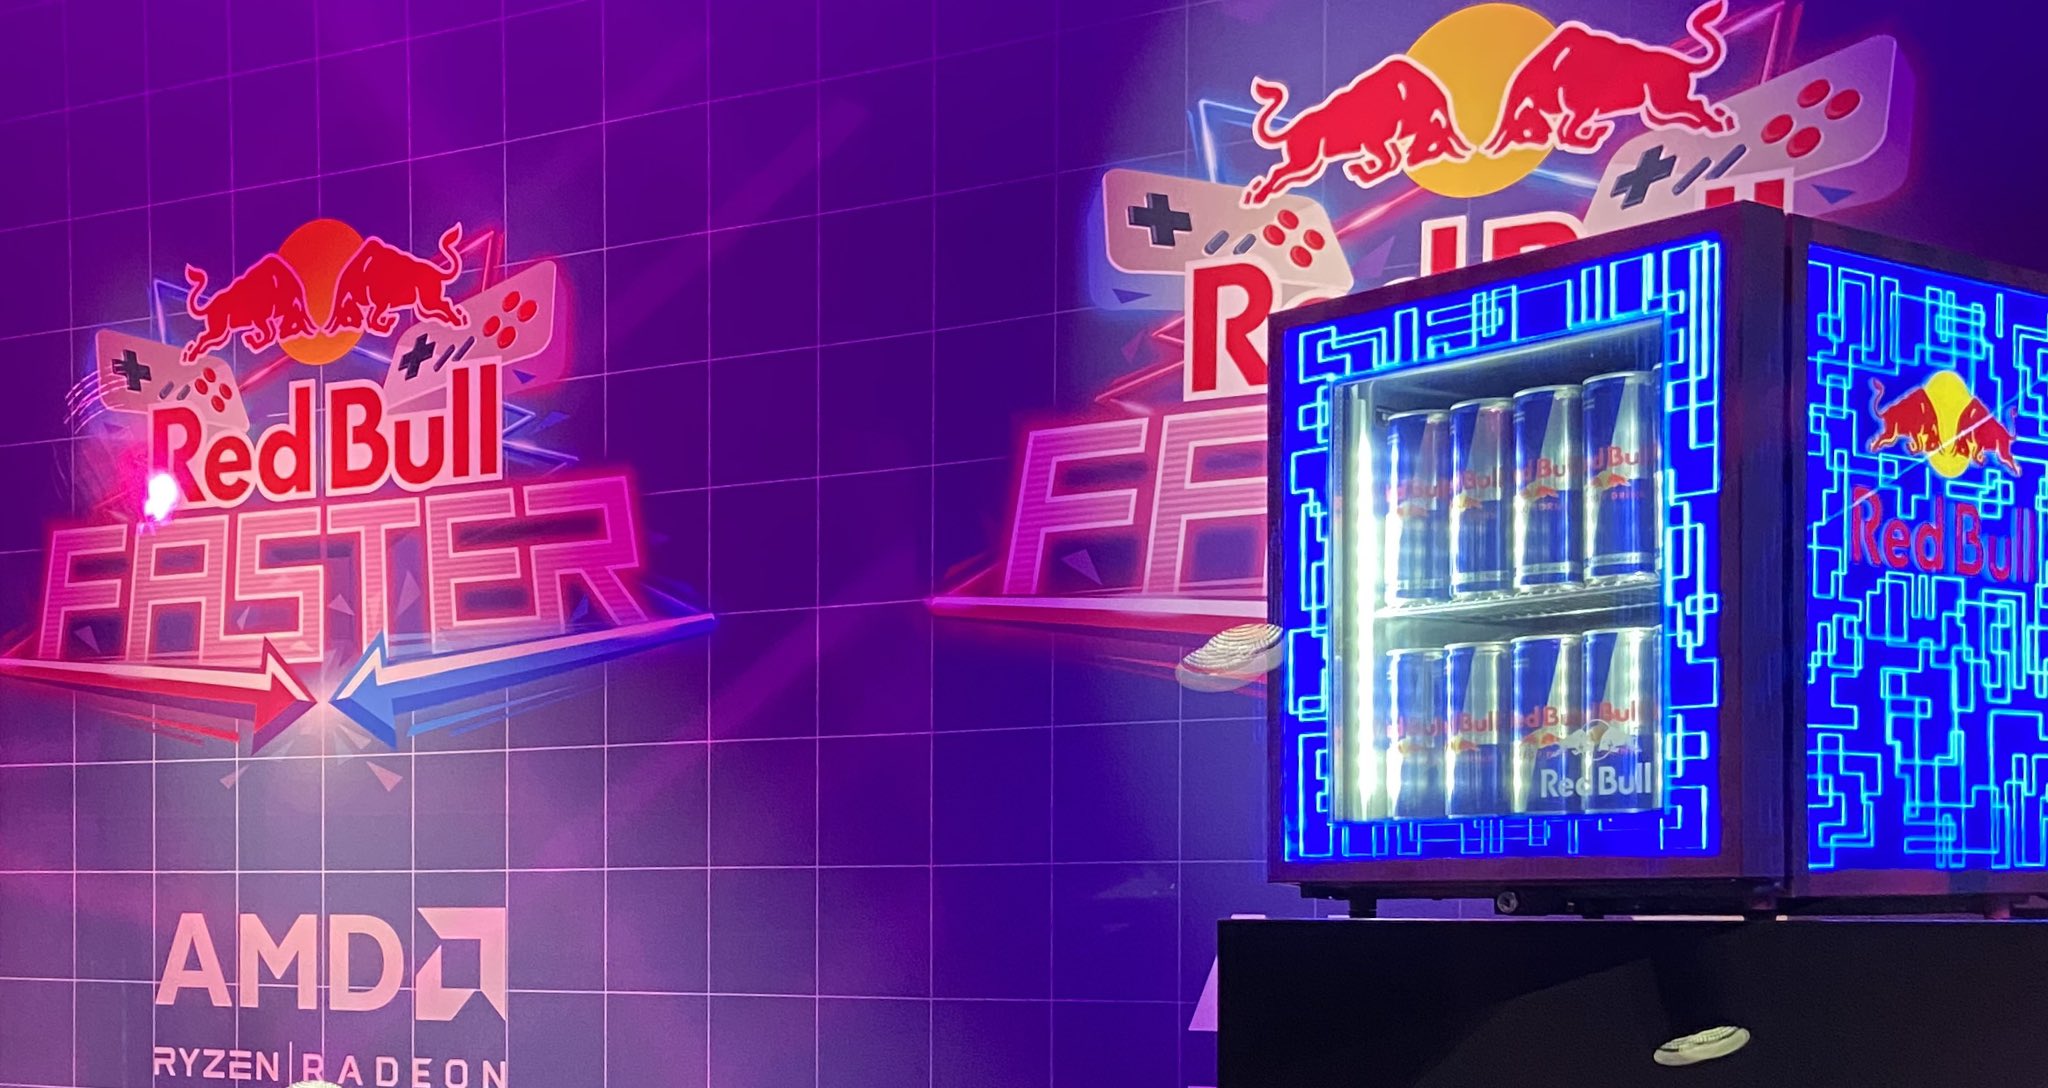 Red Bull verleiht Flüüügel on X: Ja Dings ist nice, aber habt ihr mal  diesen Kühlschrank in echt gesehen?  / X